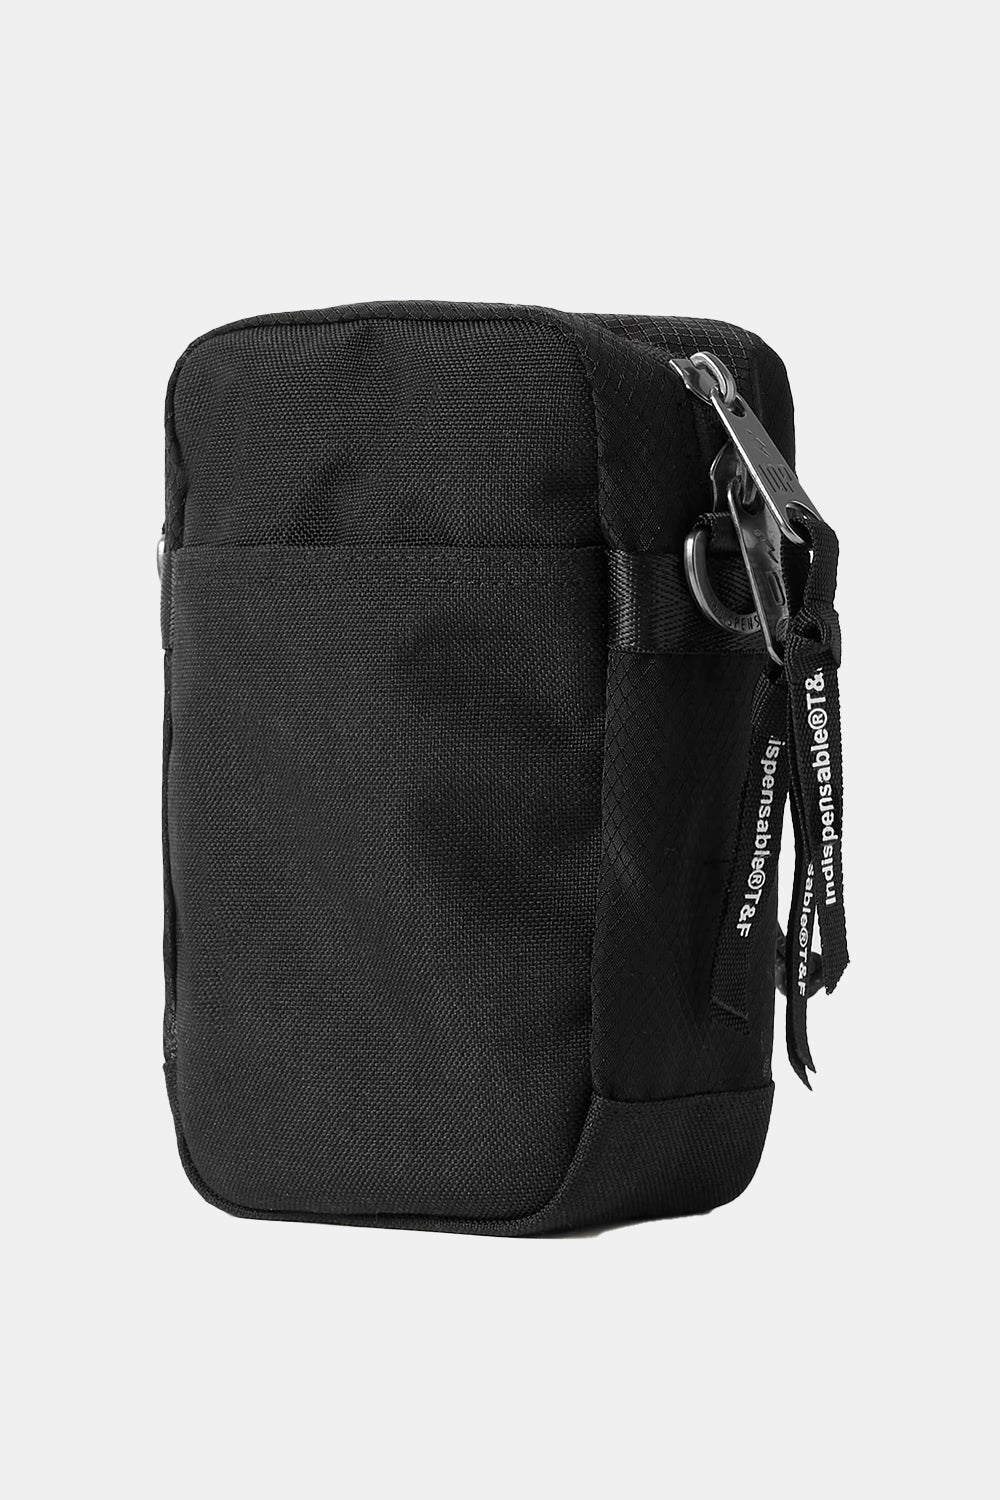 Indispensable IDP Shoulder Bag Little Strap (Black)